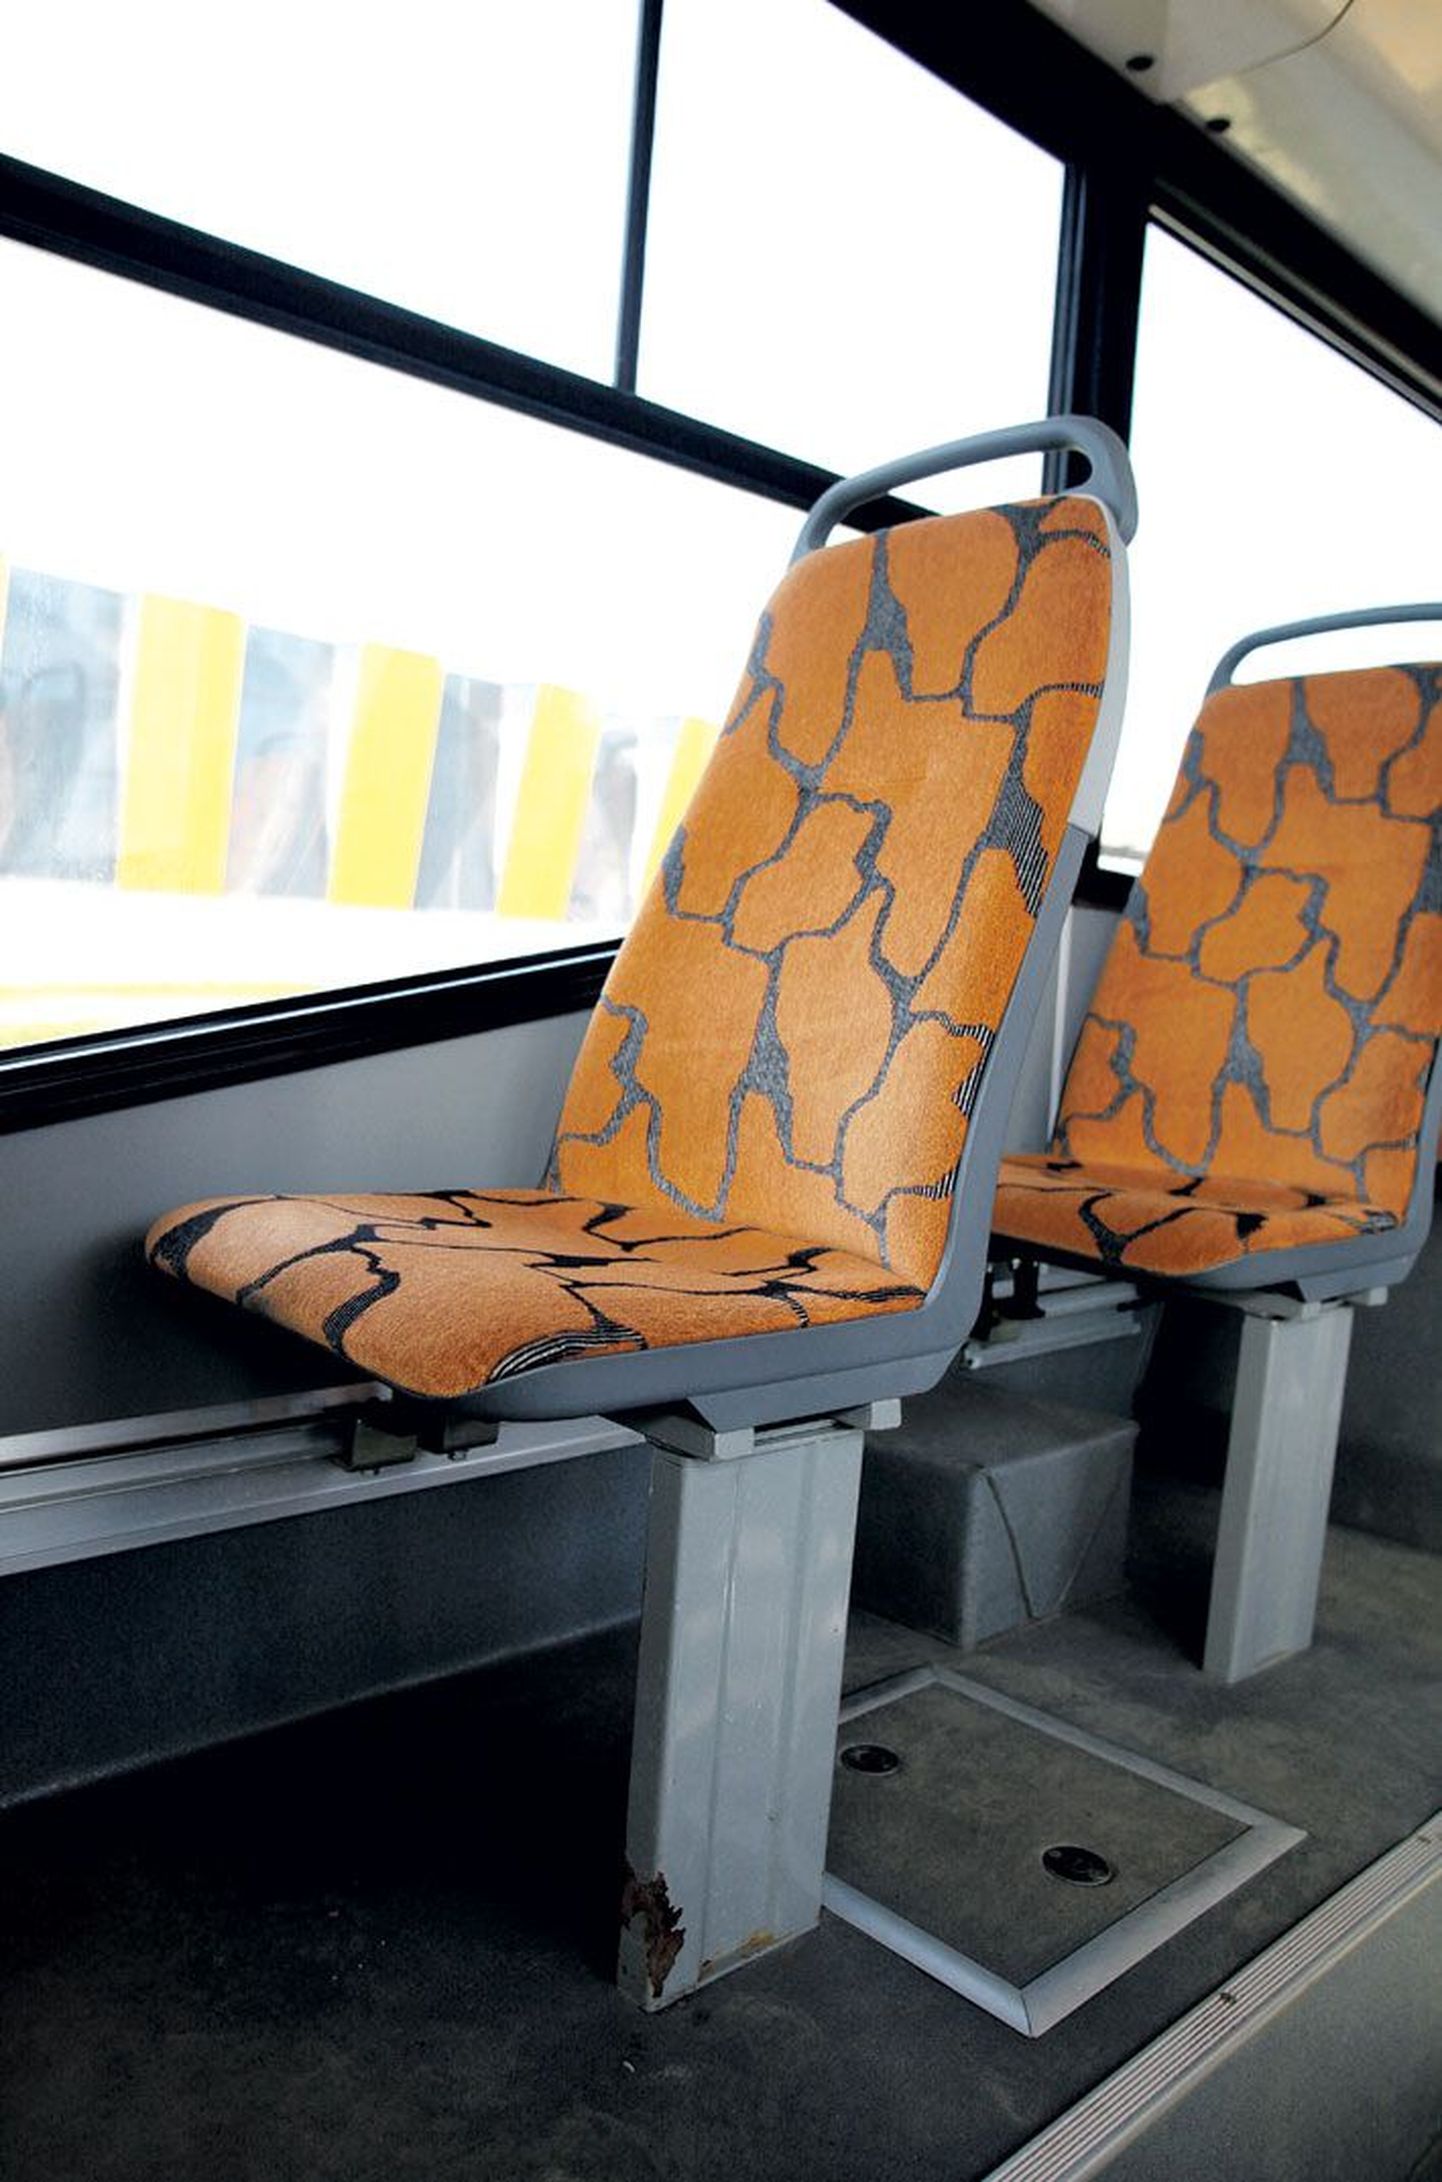 Ржавчина на основании сиденья в тартуском автобусе.